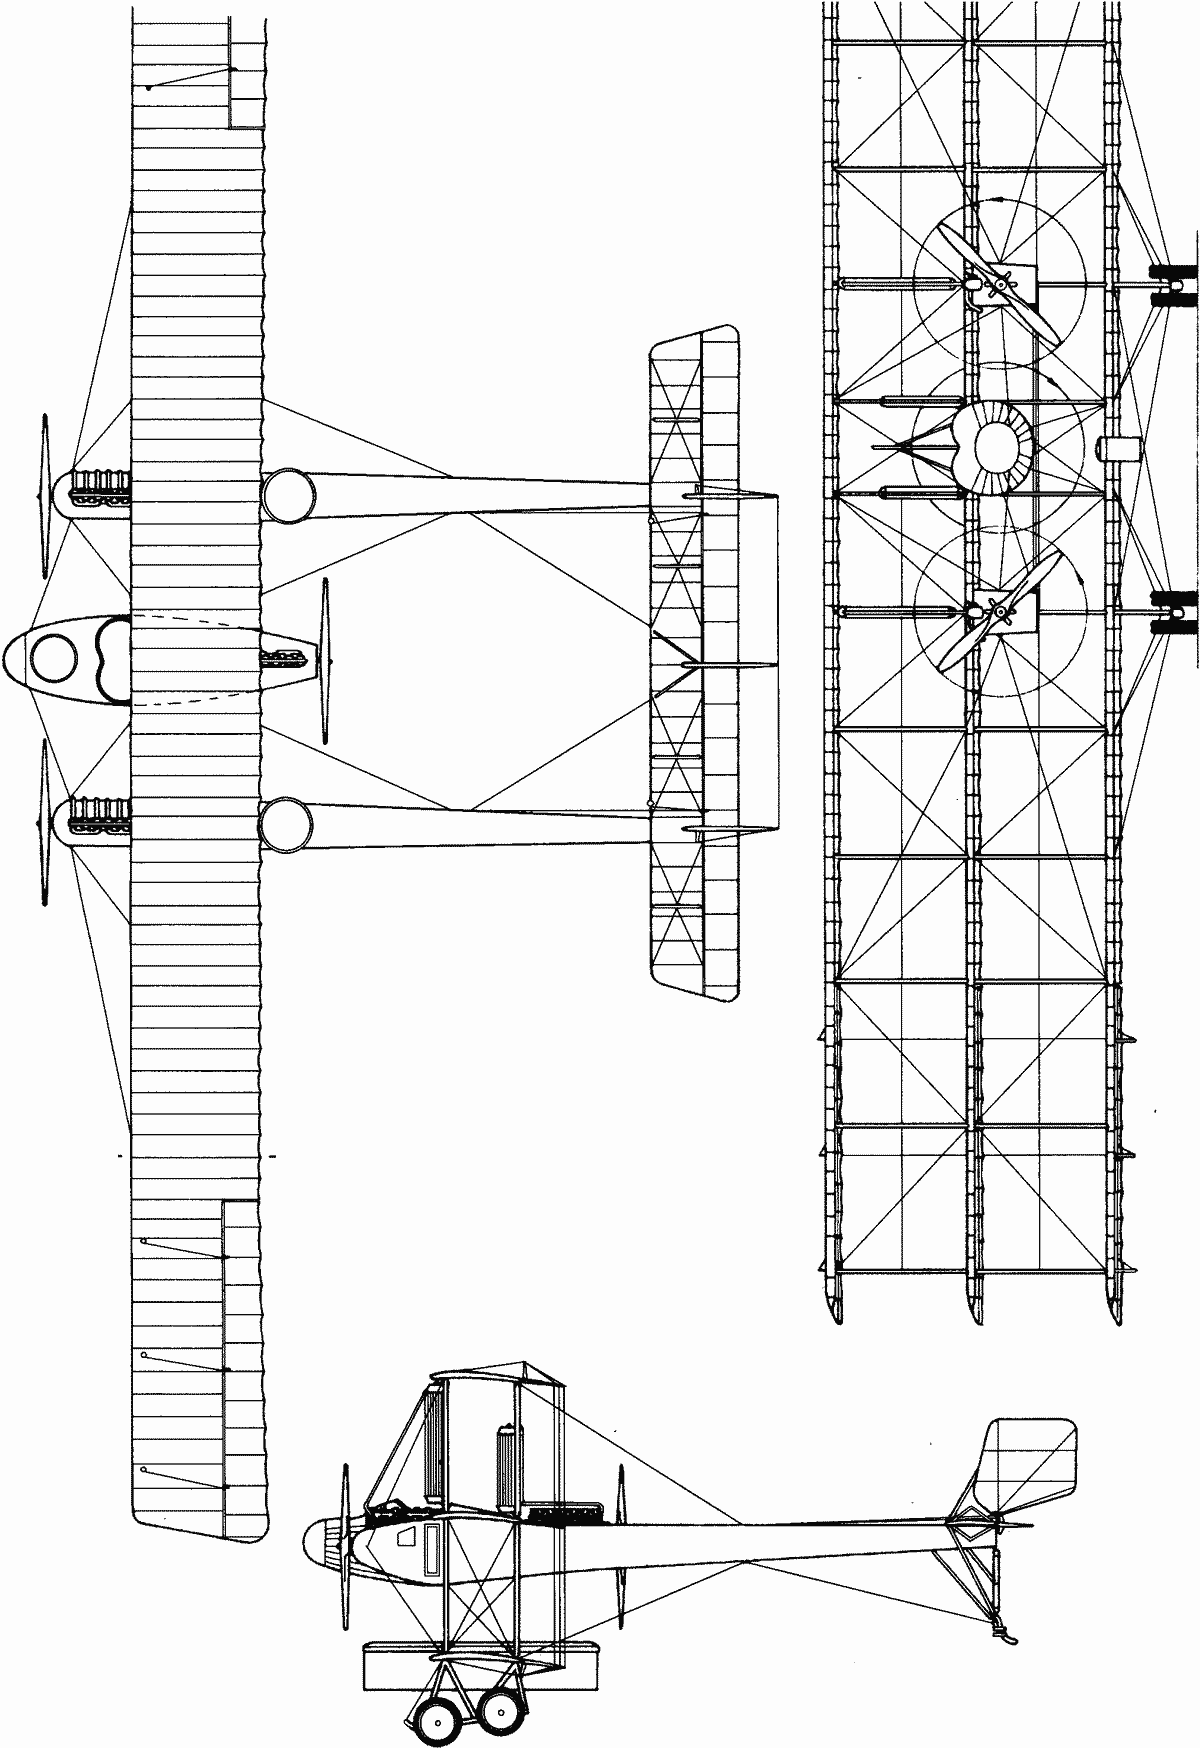 Caproni Ca.4 blueprint